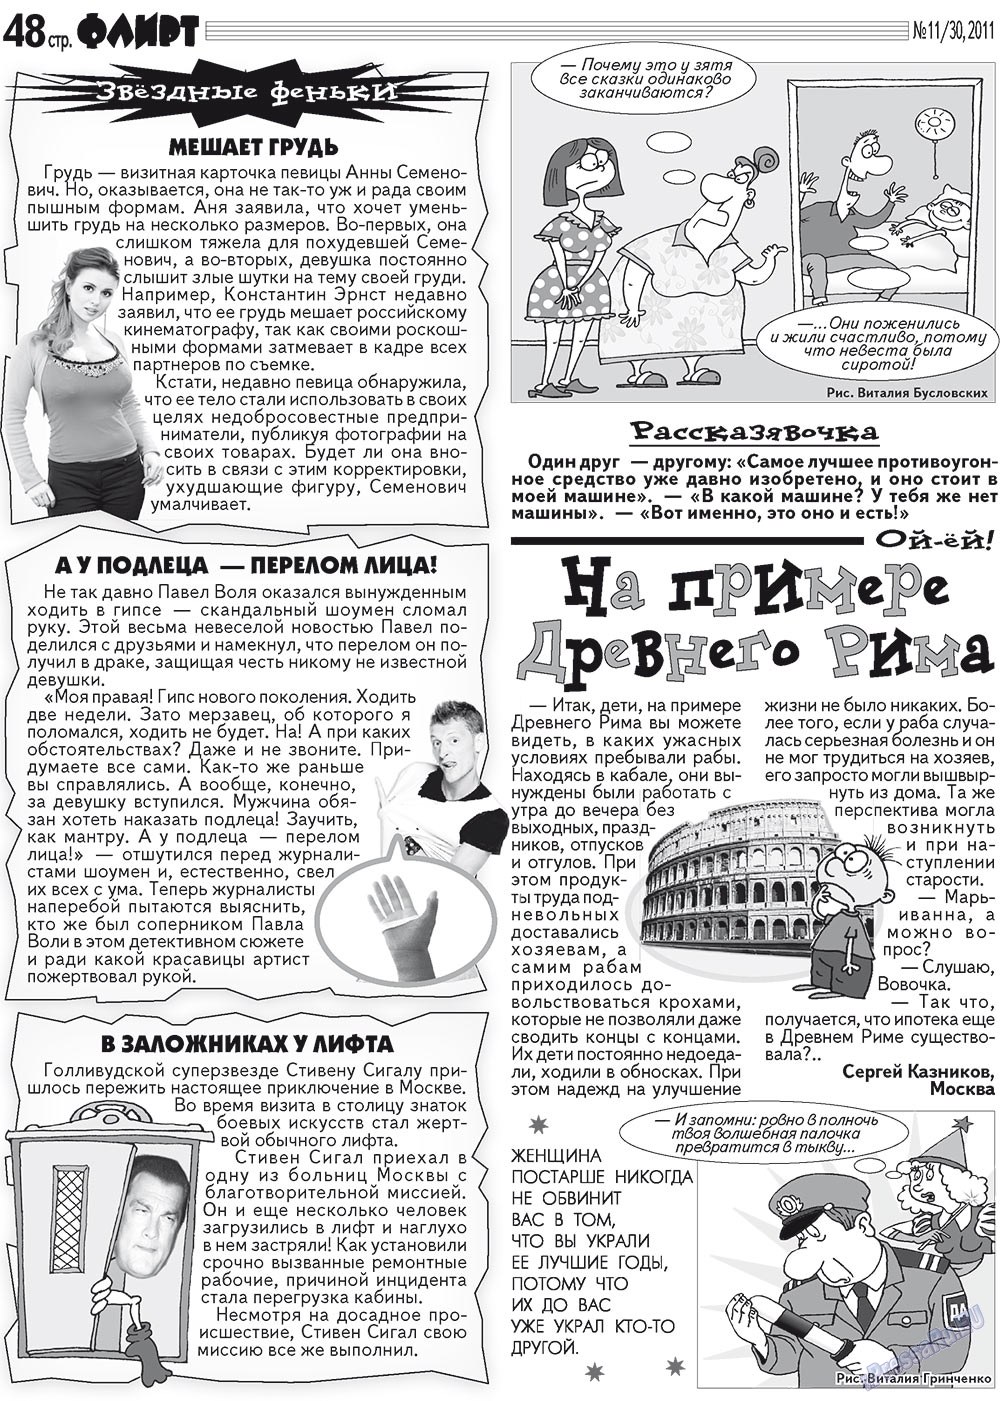 Флирт Журнал Сайт Москва